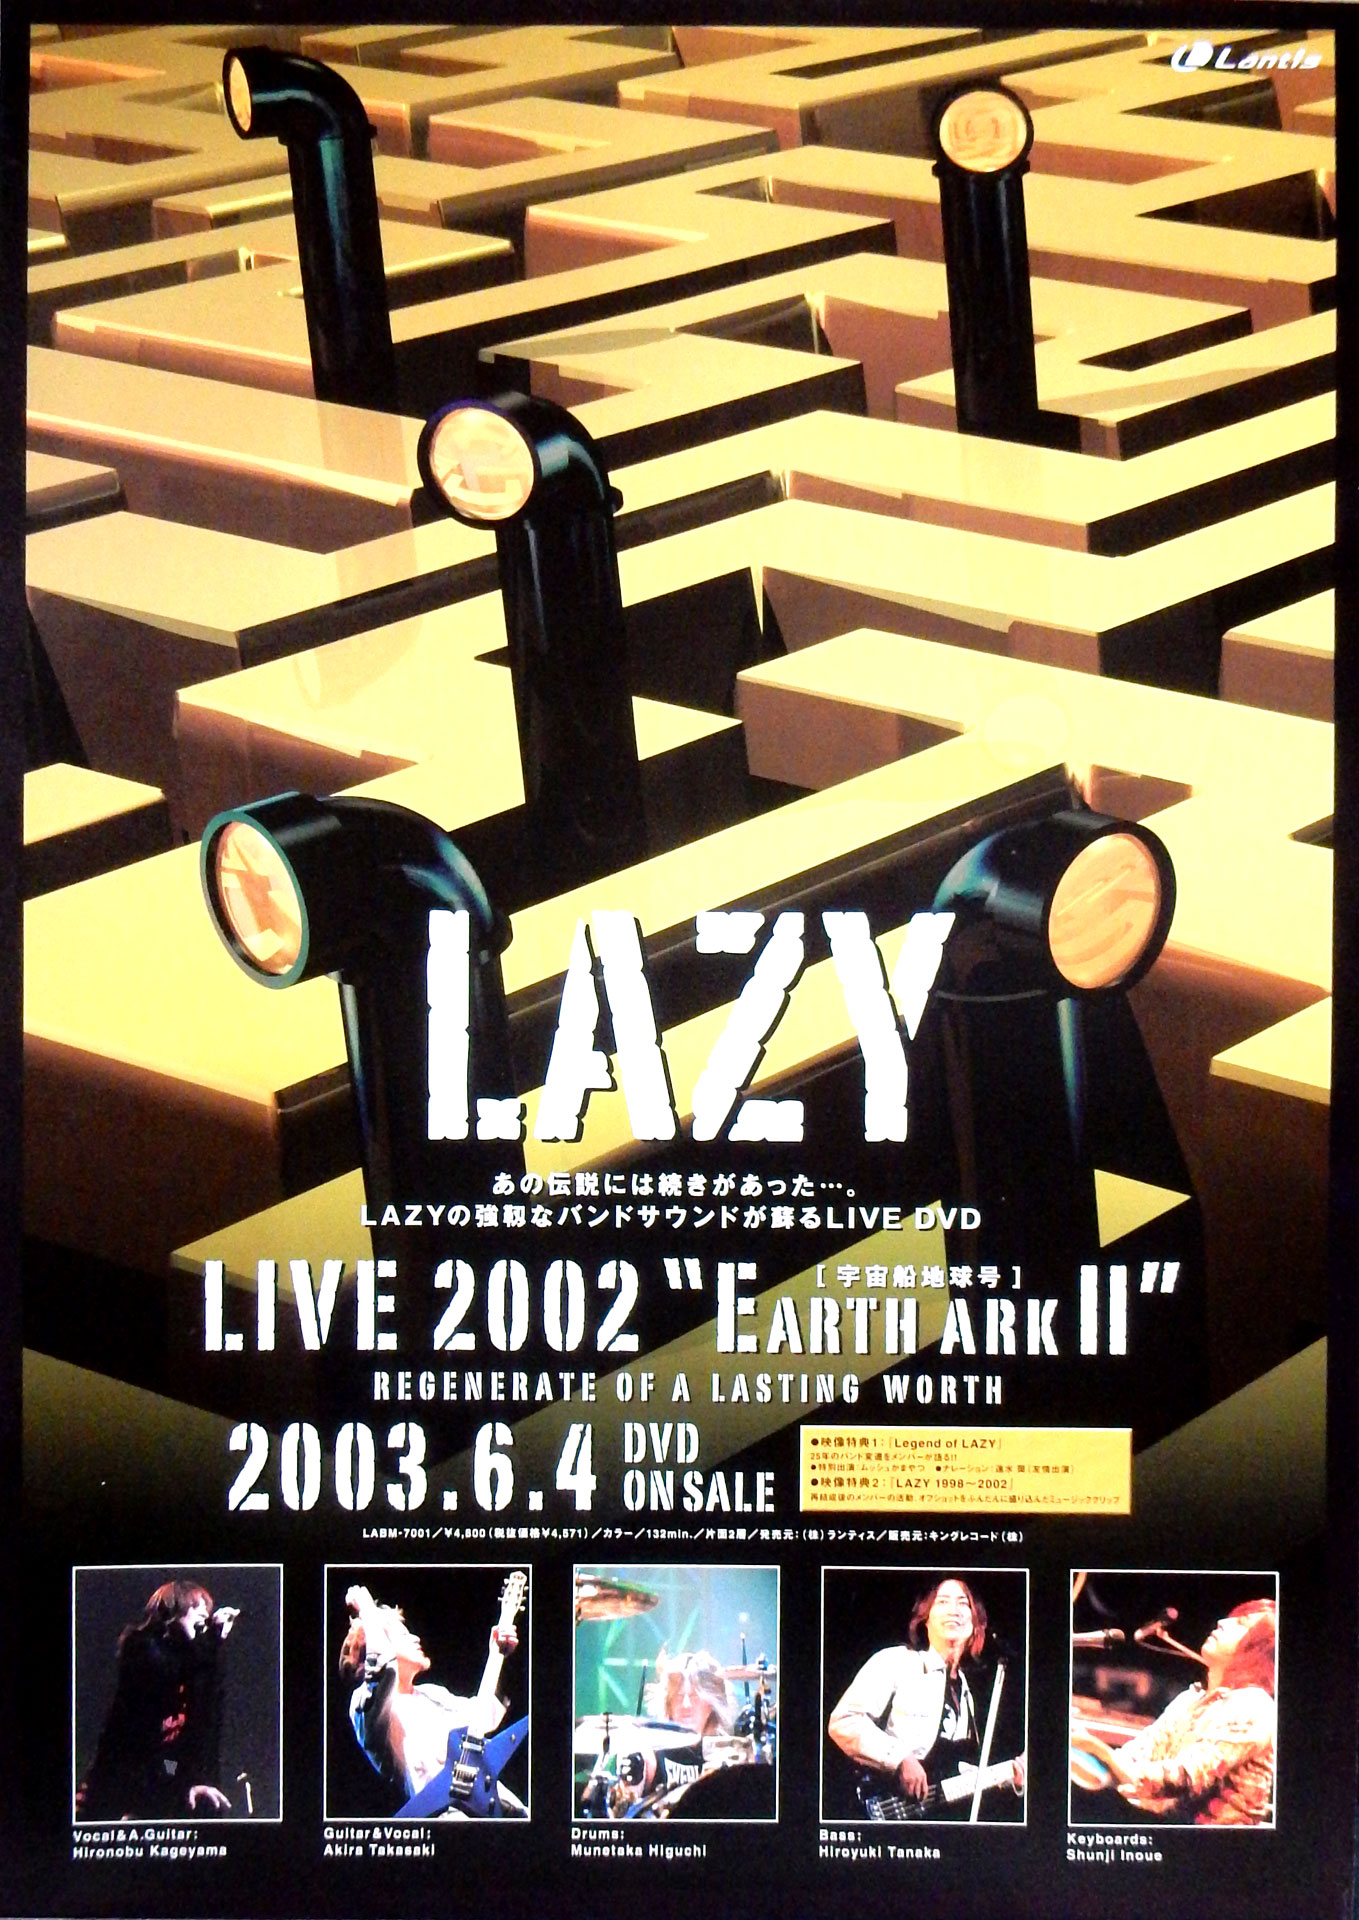 レイジー 「LAZY LIVE 2002 宇宙船・・」のポスター